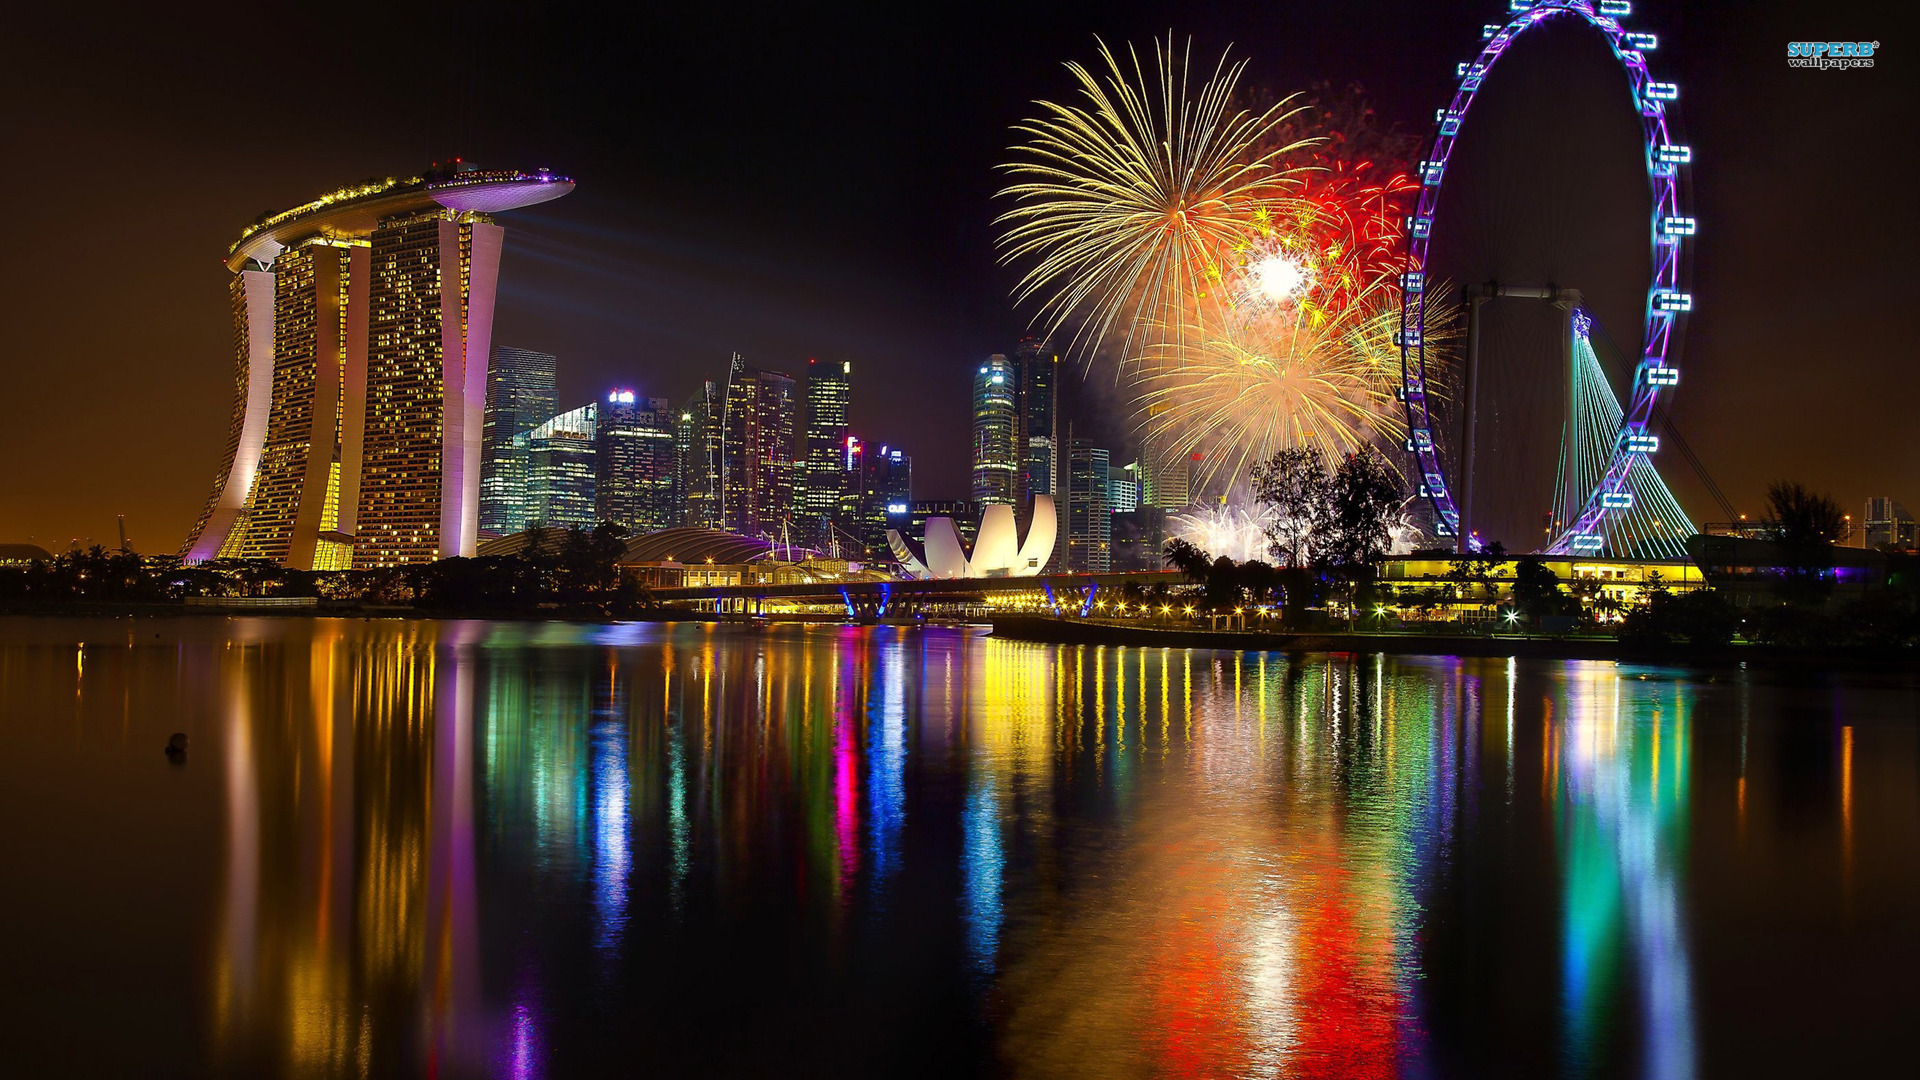 싱가포르 이미지 배경,반사,도시 풍경,수도권,밤,관람차